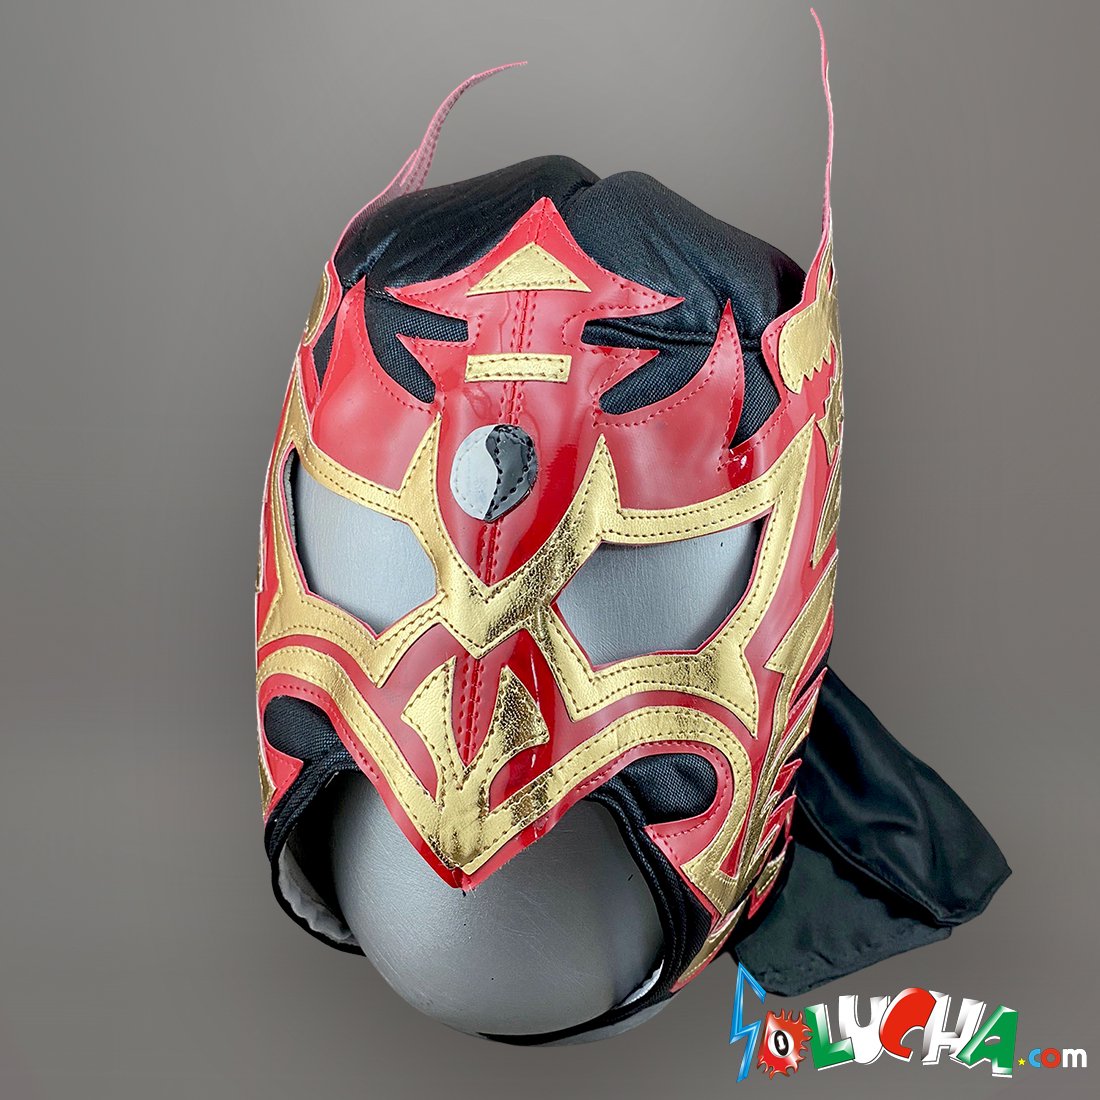 メキシコ製応援用マスク◆ウルチモドラゴン▪セミプロマスク▪新品◆ルチャリブレ